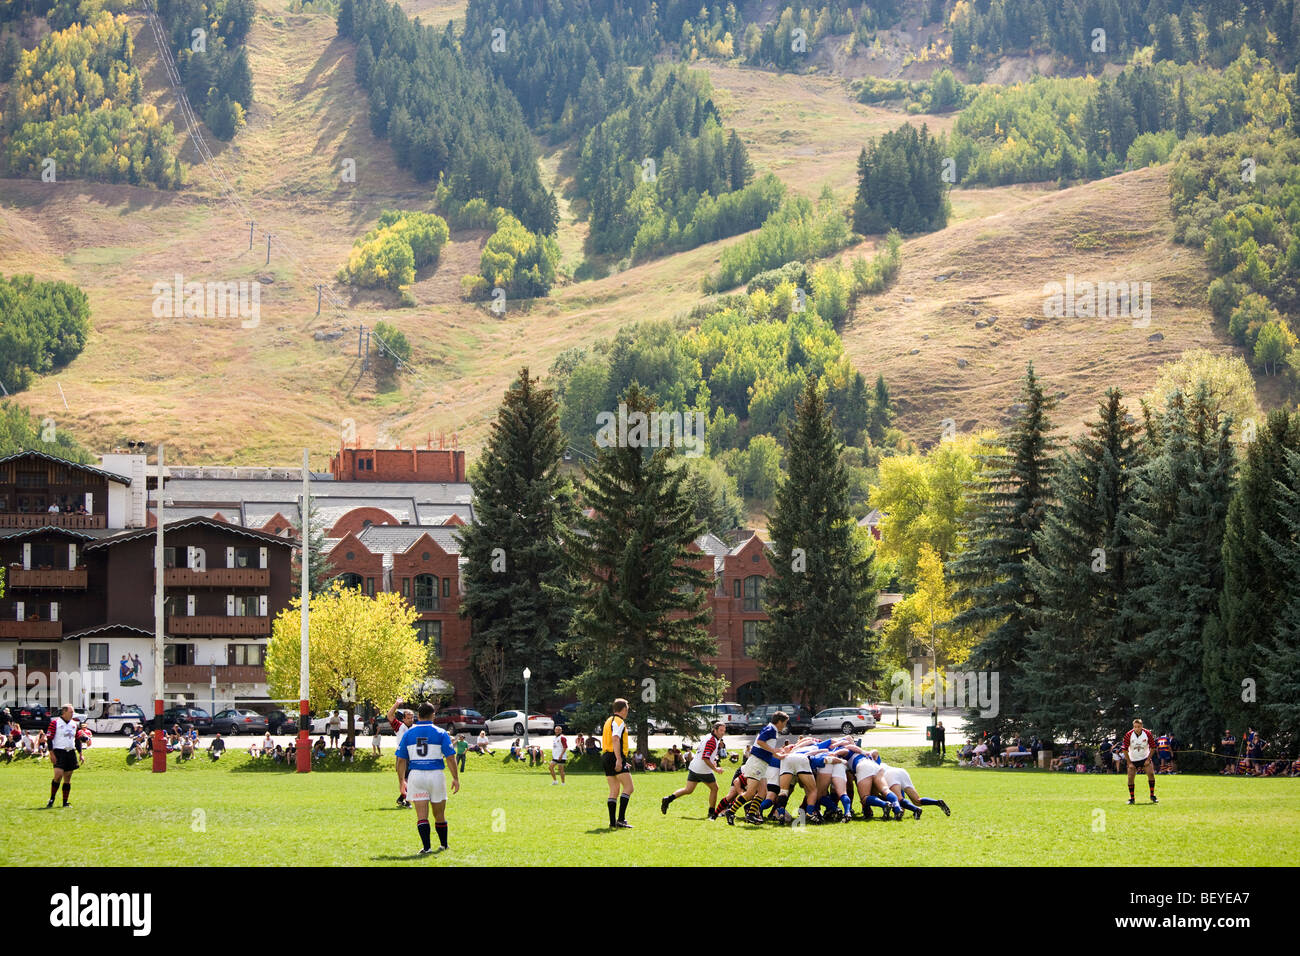 Aspen Colorado, la Ruggerfest d 2009, le plus ancien tournoi de Rugby aux Etats-Unis. Une mêlée ordonnée dans un contexte de pistes de ski. Banque D'Images